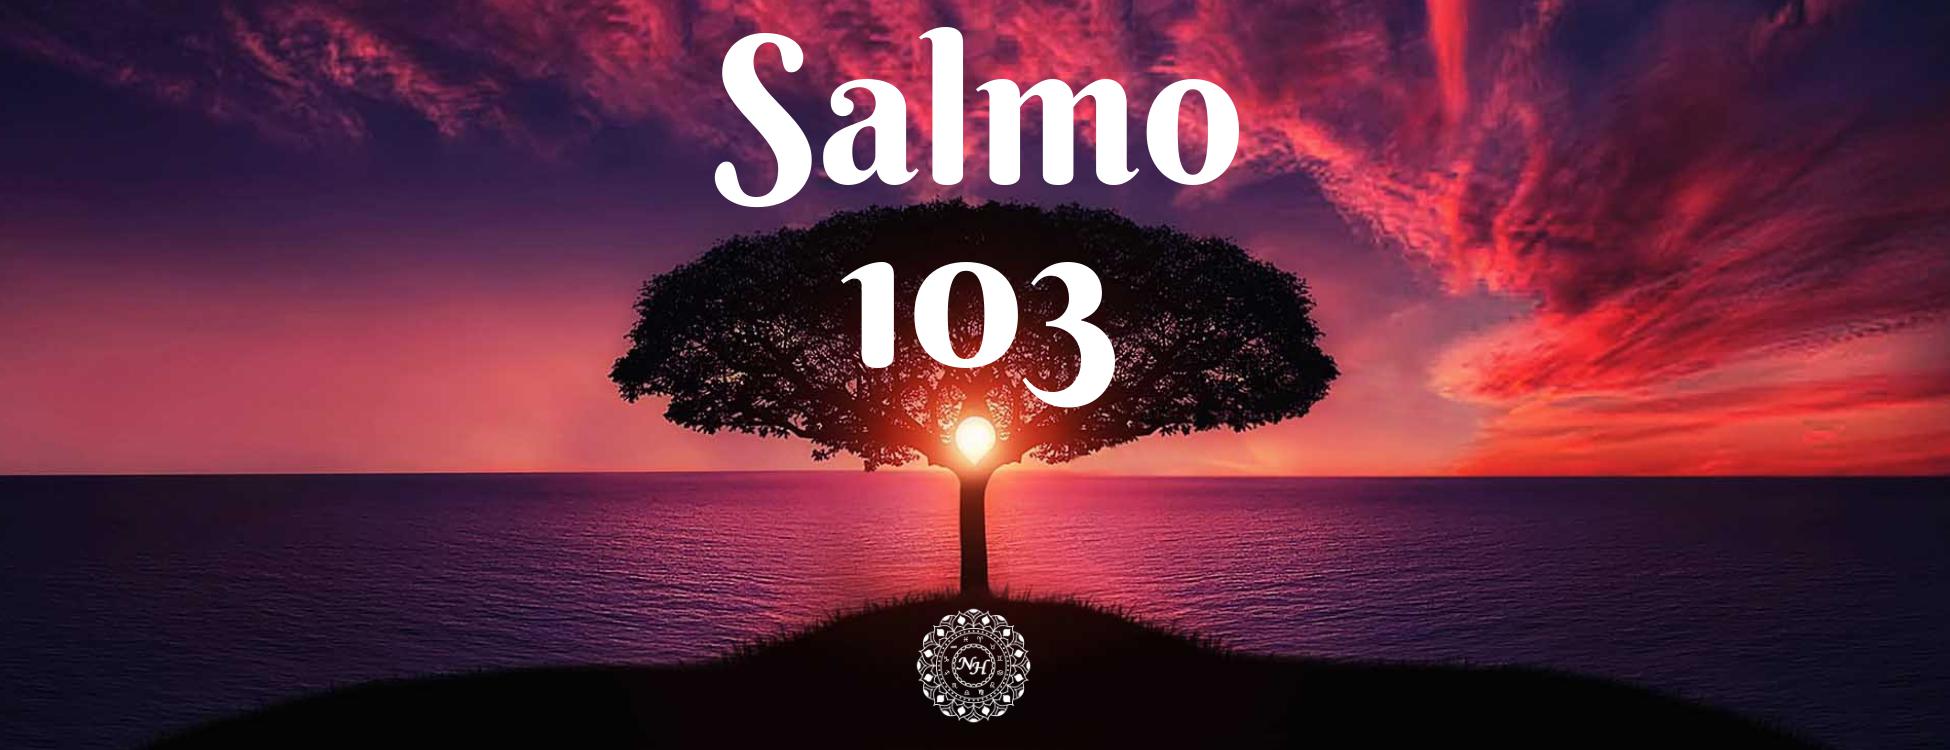 SALMOS 103 - Alabanza por las Bendiciones de Dios 